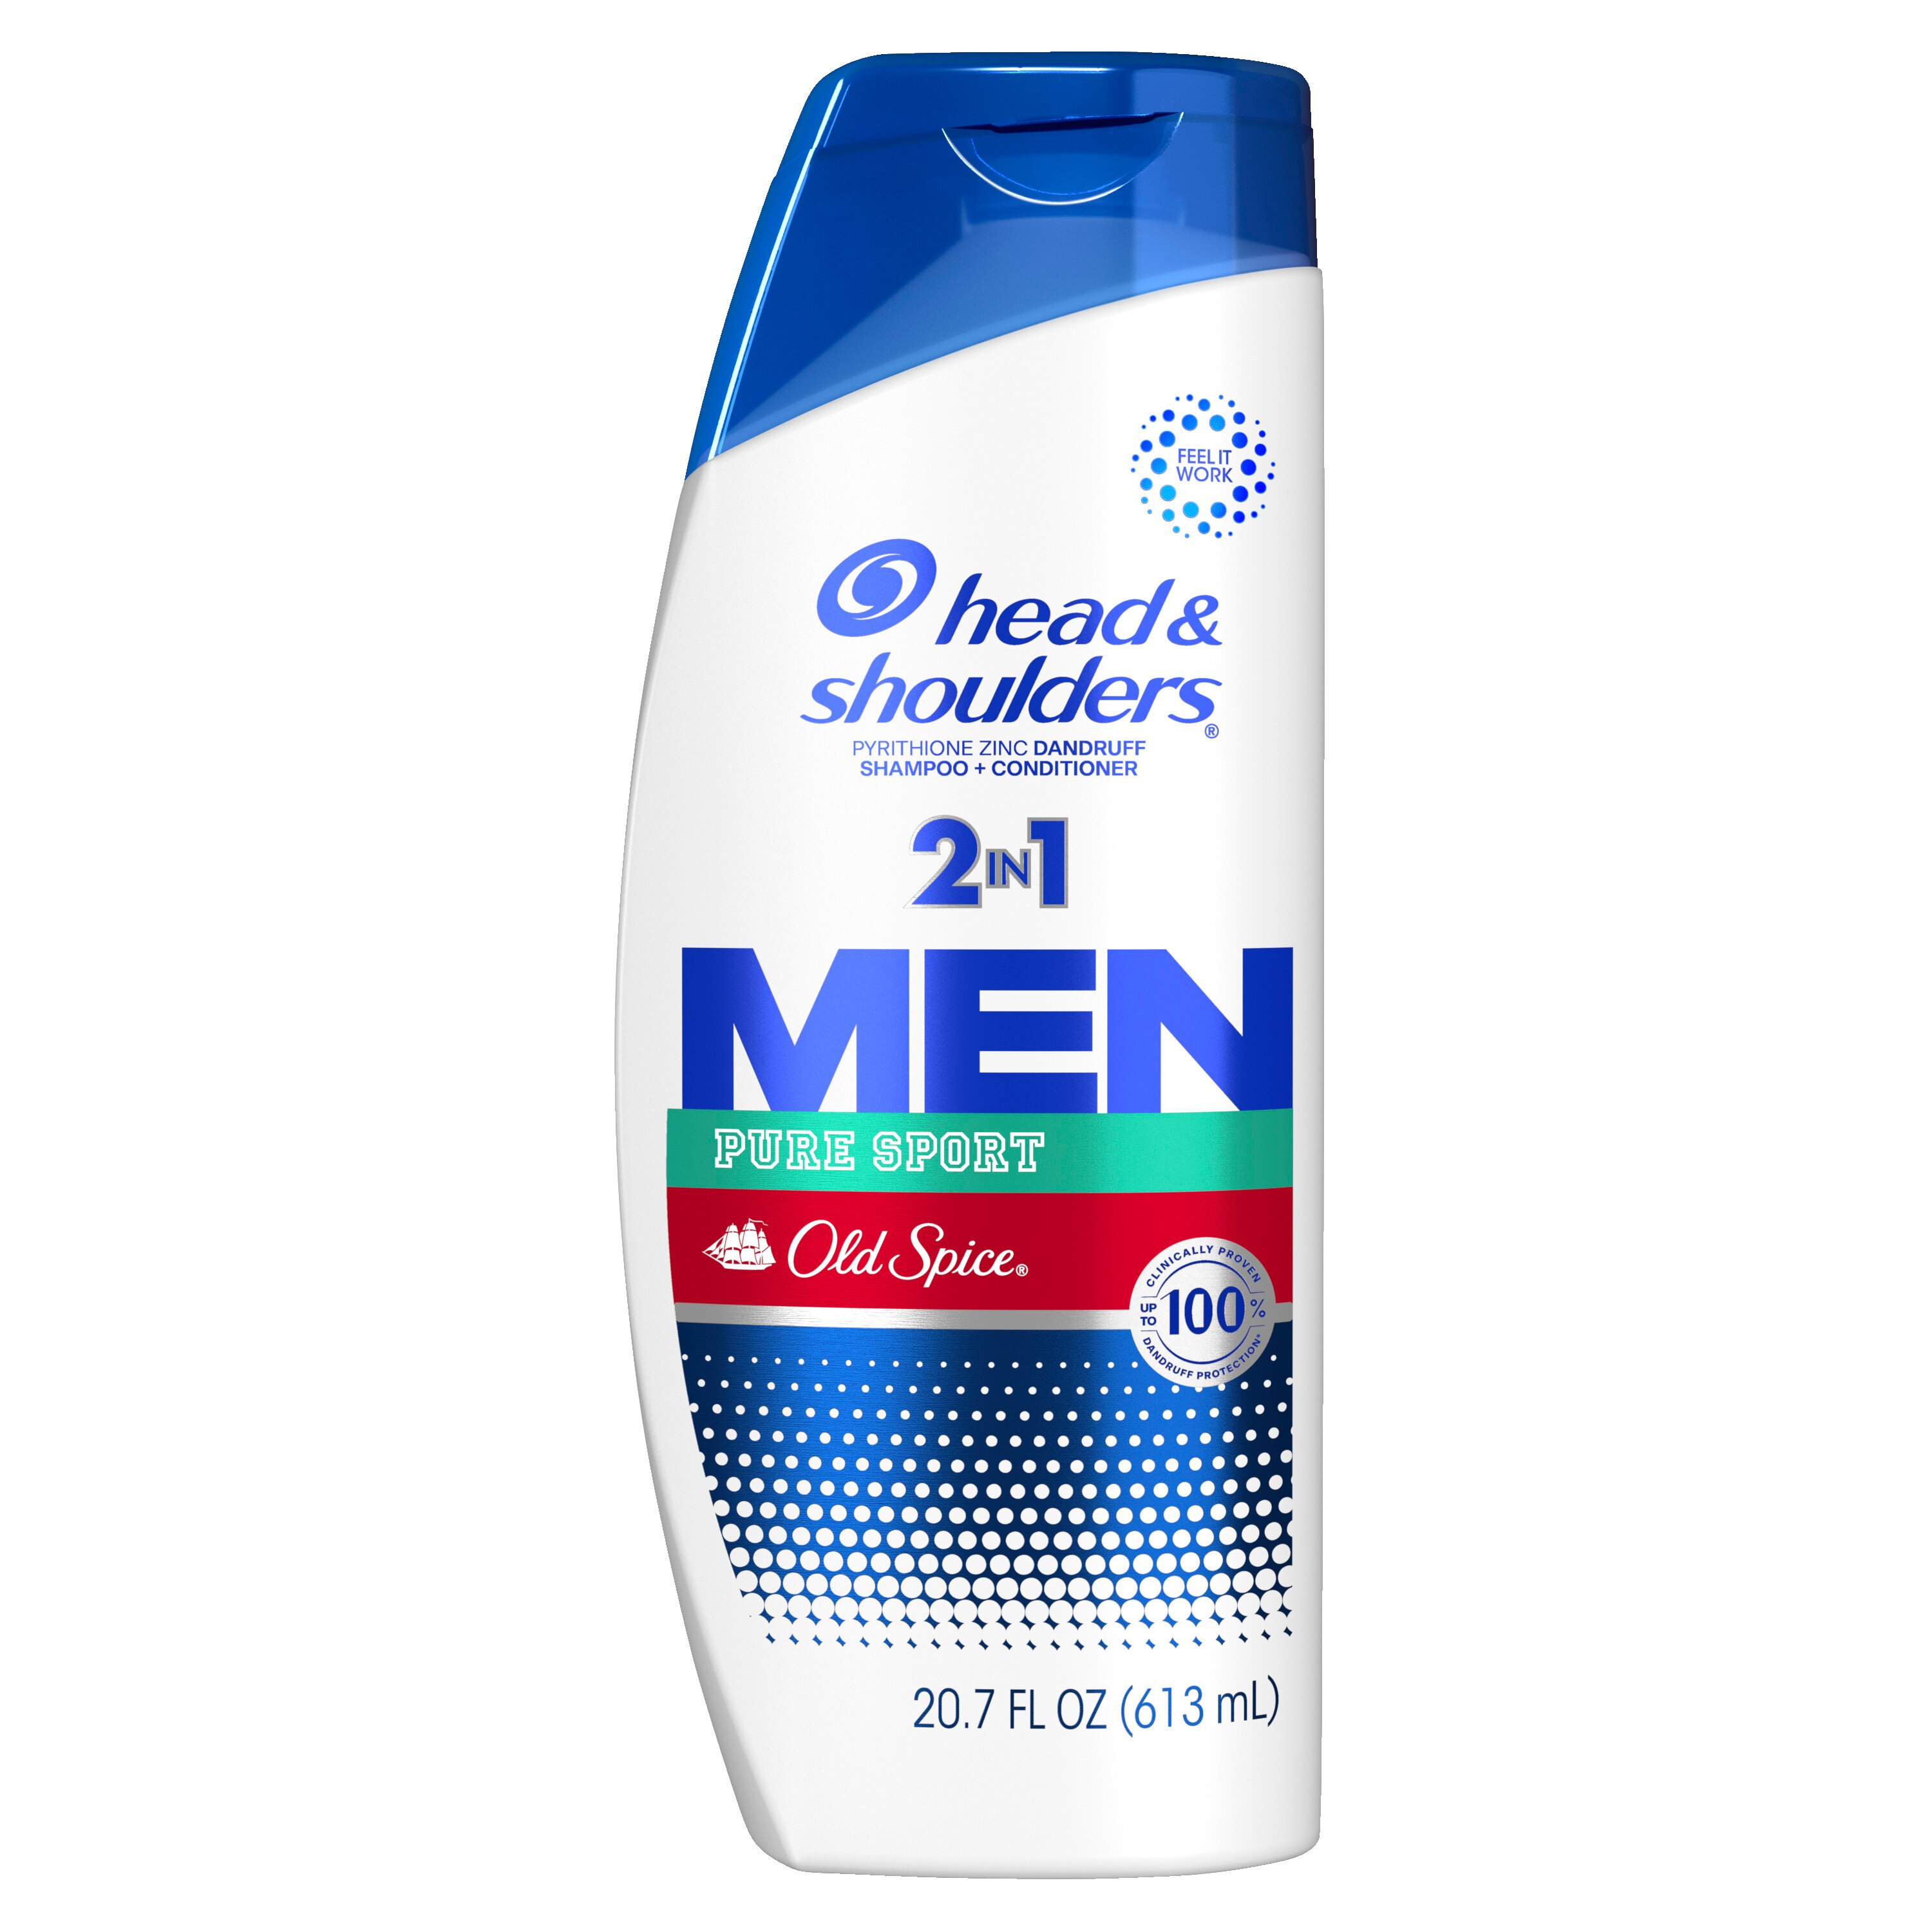 Head & Shoulders Men Old Spice Pure Sport 2-in-1 Dandruff Shampoo & Conditioner